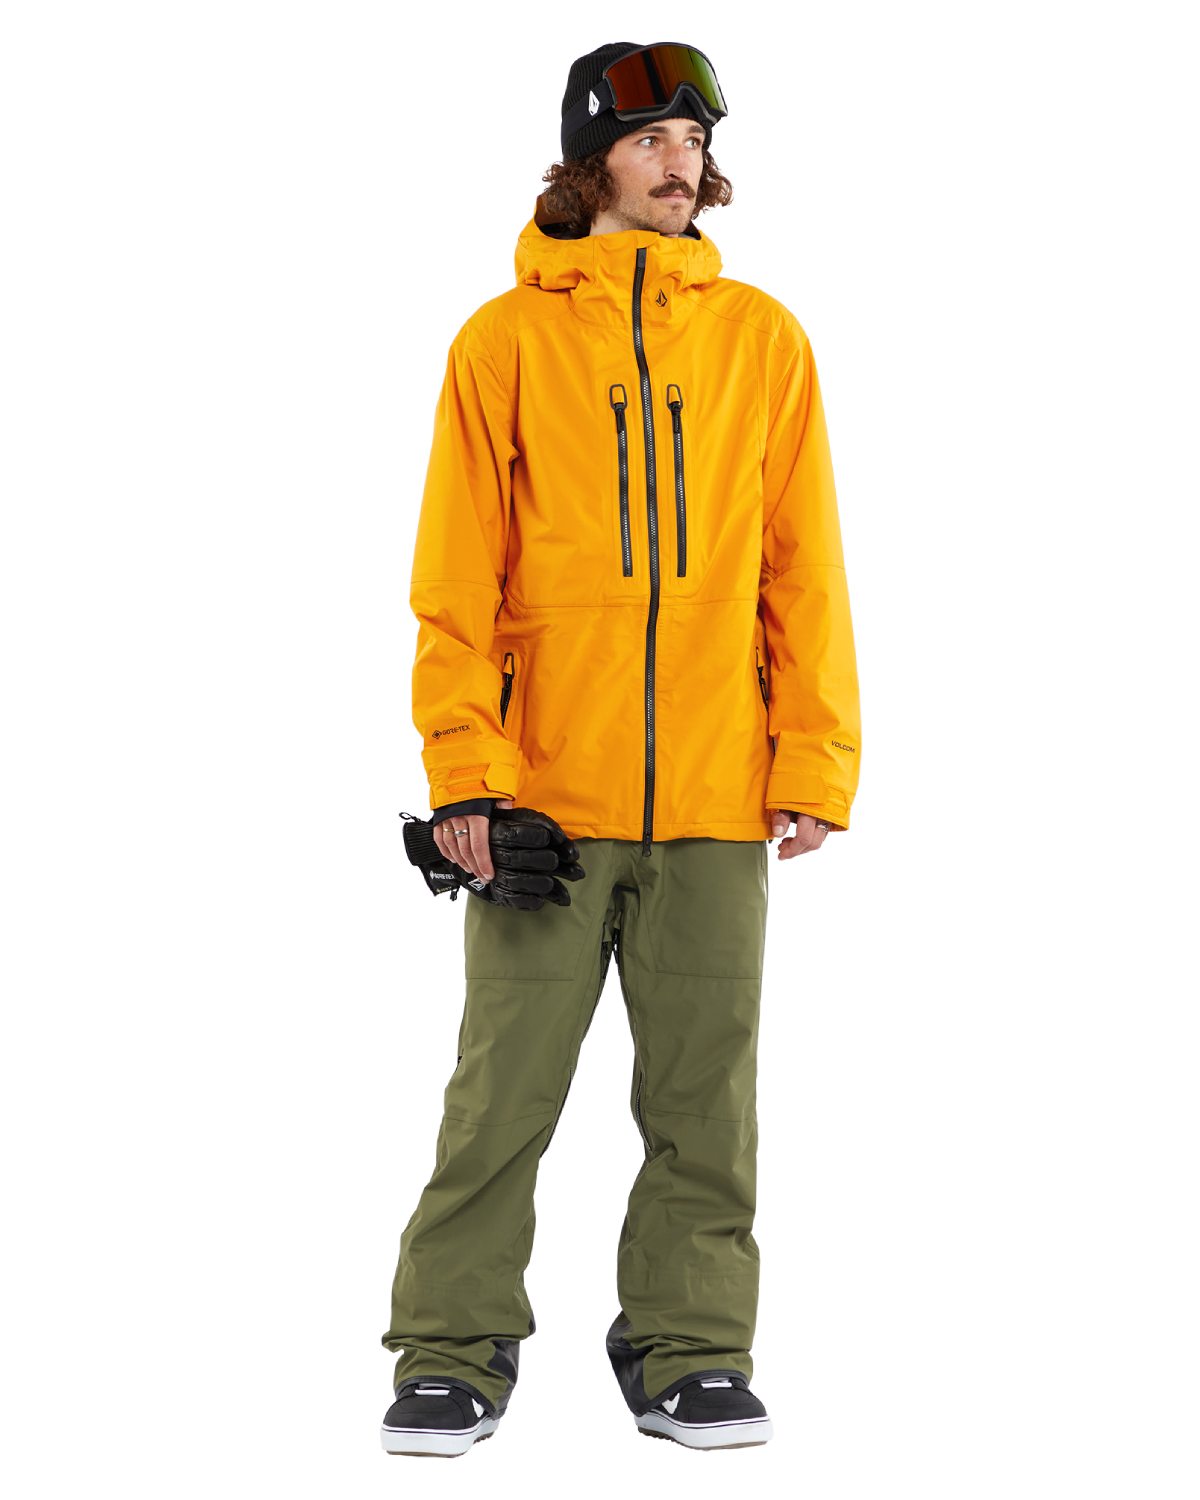 Volcom Men's Guide GORE-TEX Ski Jacket in Gold